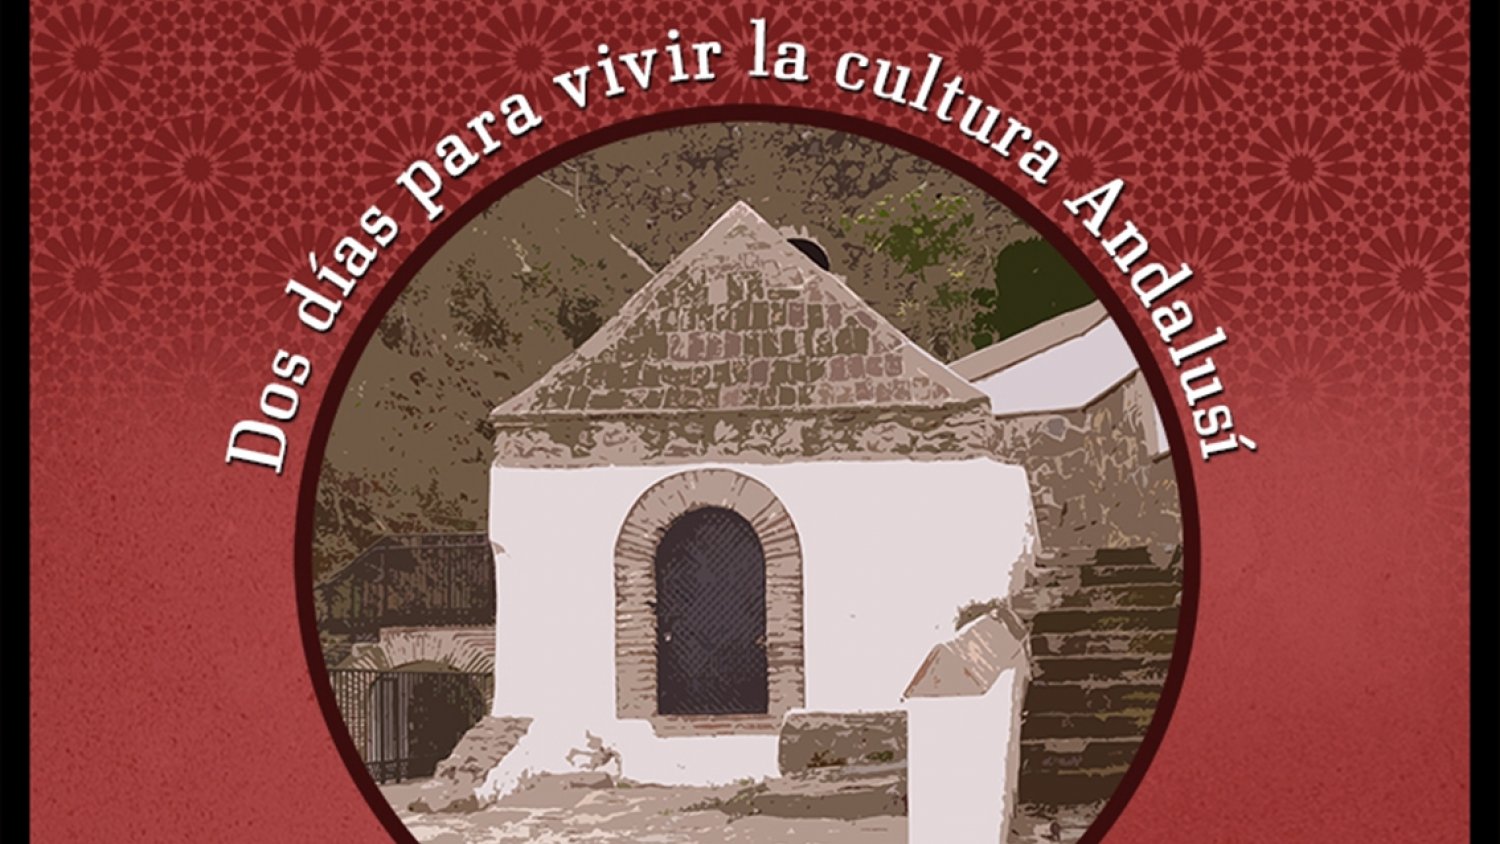 Estepona celebrará el IX Encuentro del Coleccionismo y Arte que contará con una treintena de expositores